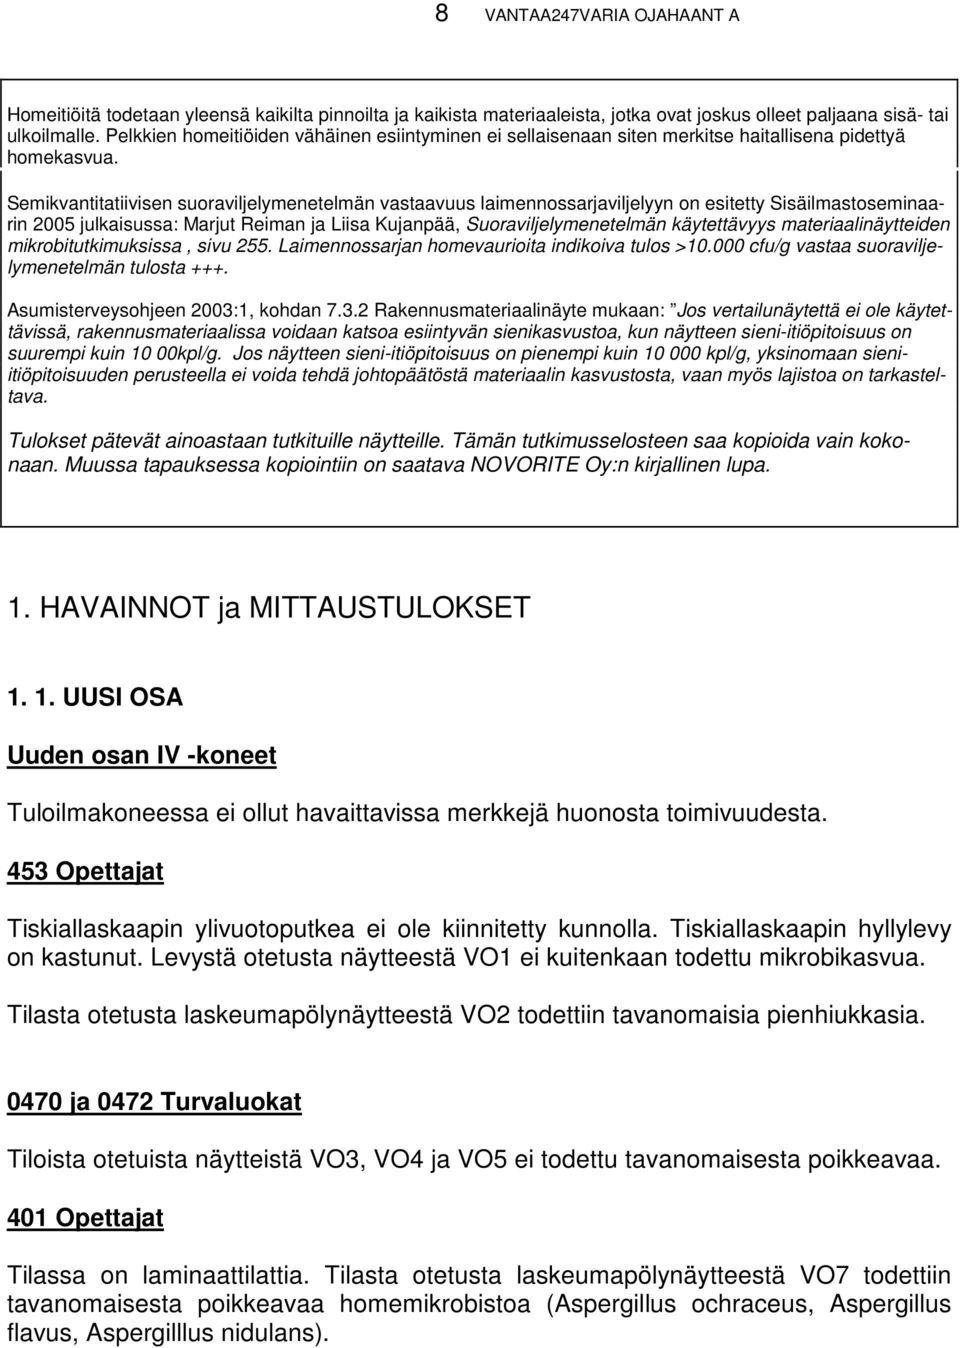 Semikvantitatiivisen suoraviljelymenetelmän vastaavuus laimennossarjaviljelyyn on esitetty Sisäilmastoseminaarin 2005 julkaisussa: Marjut Reiman ja Liisa Kujanpää, Suoraviljelymenetelmän käytettävyys